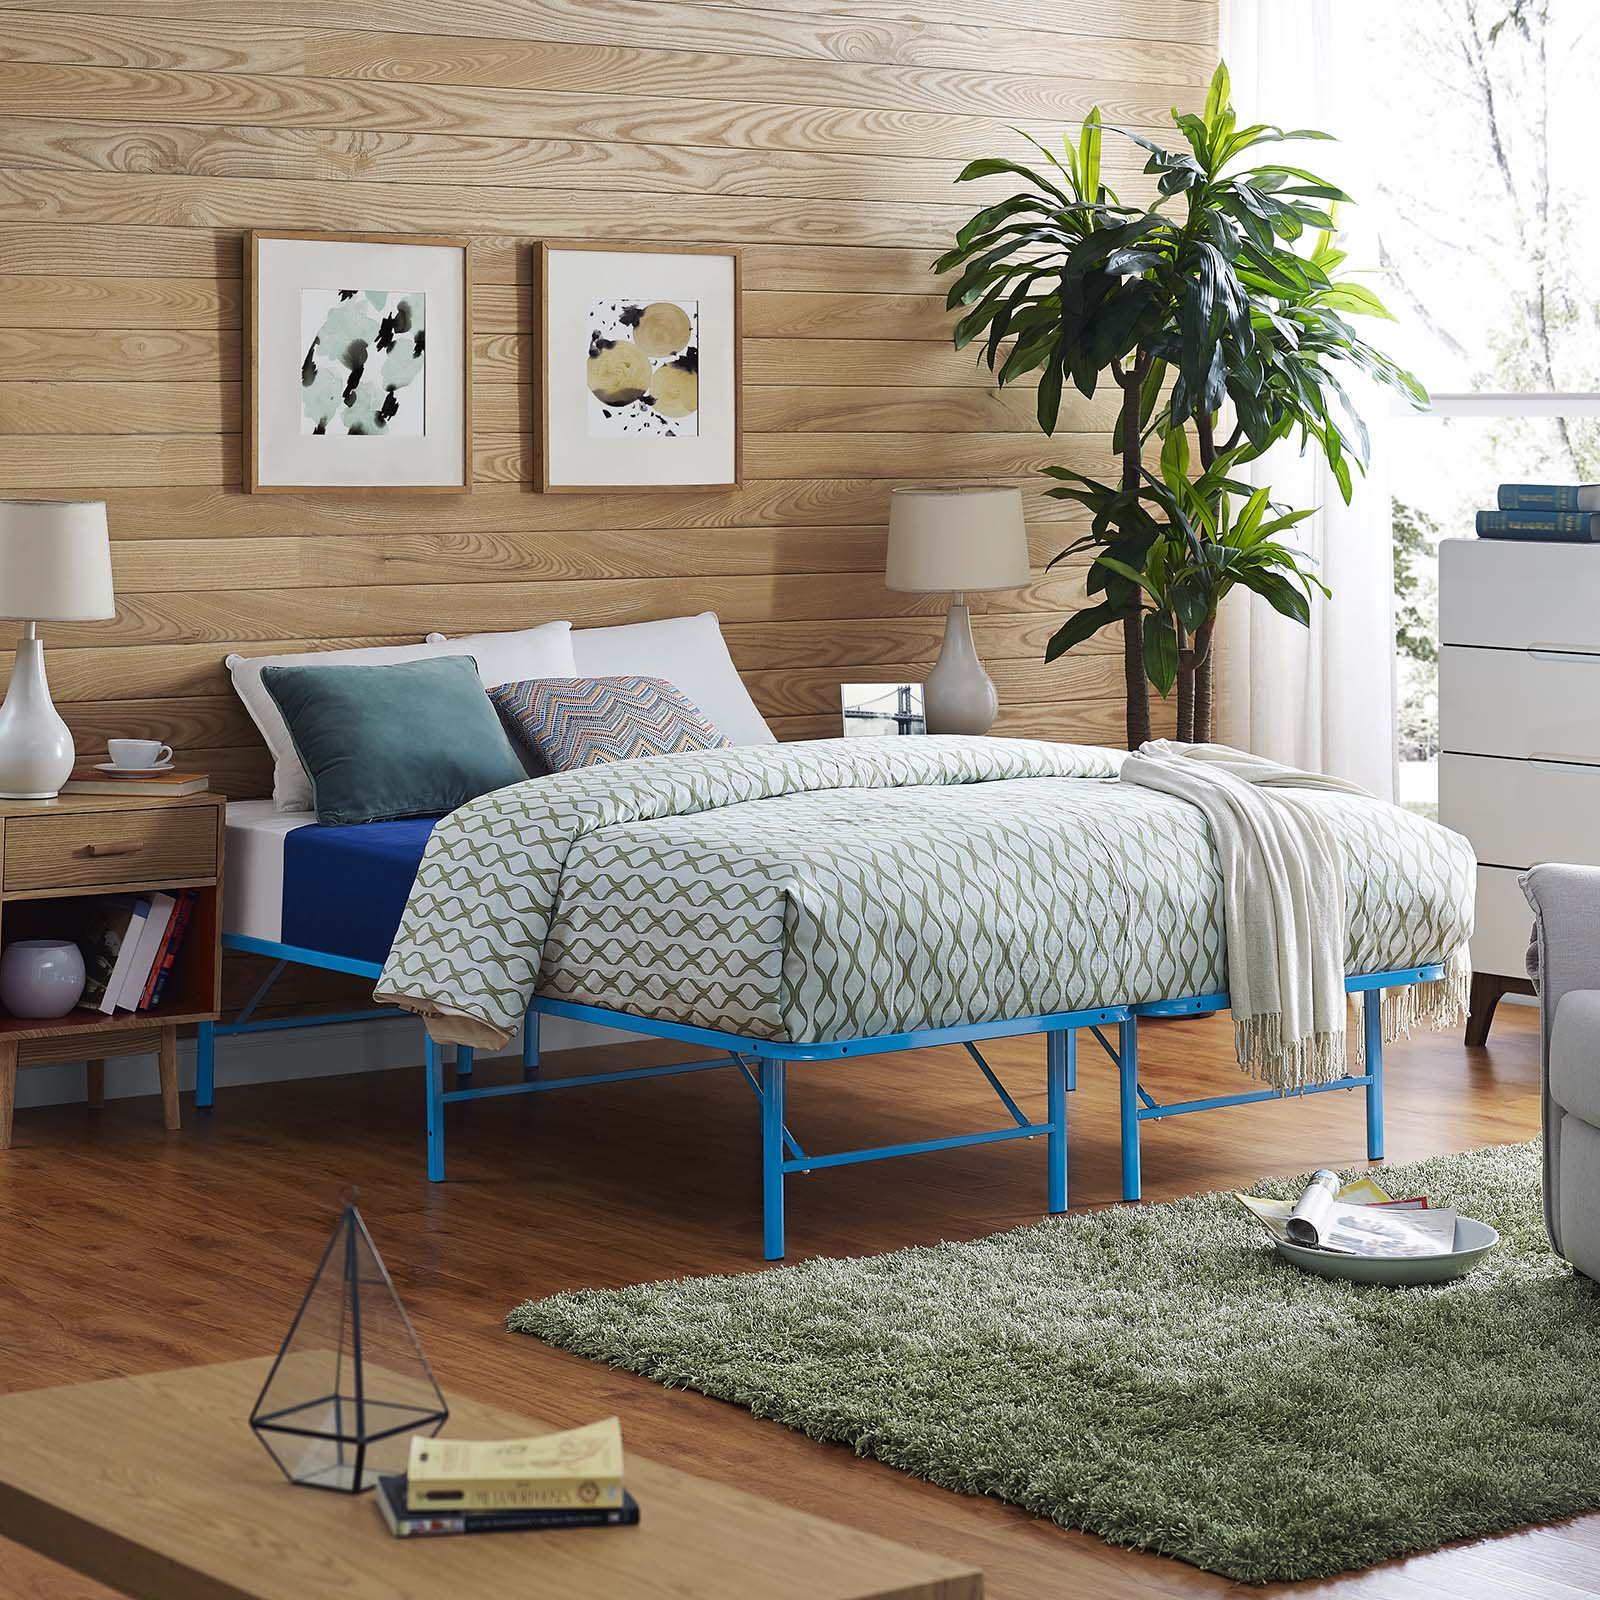 Horizon Full Stainless Steel Bed Frame - East Shore Modern Home Furnishings